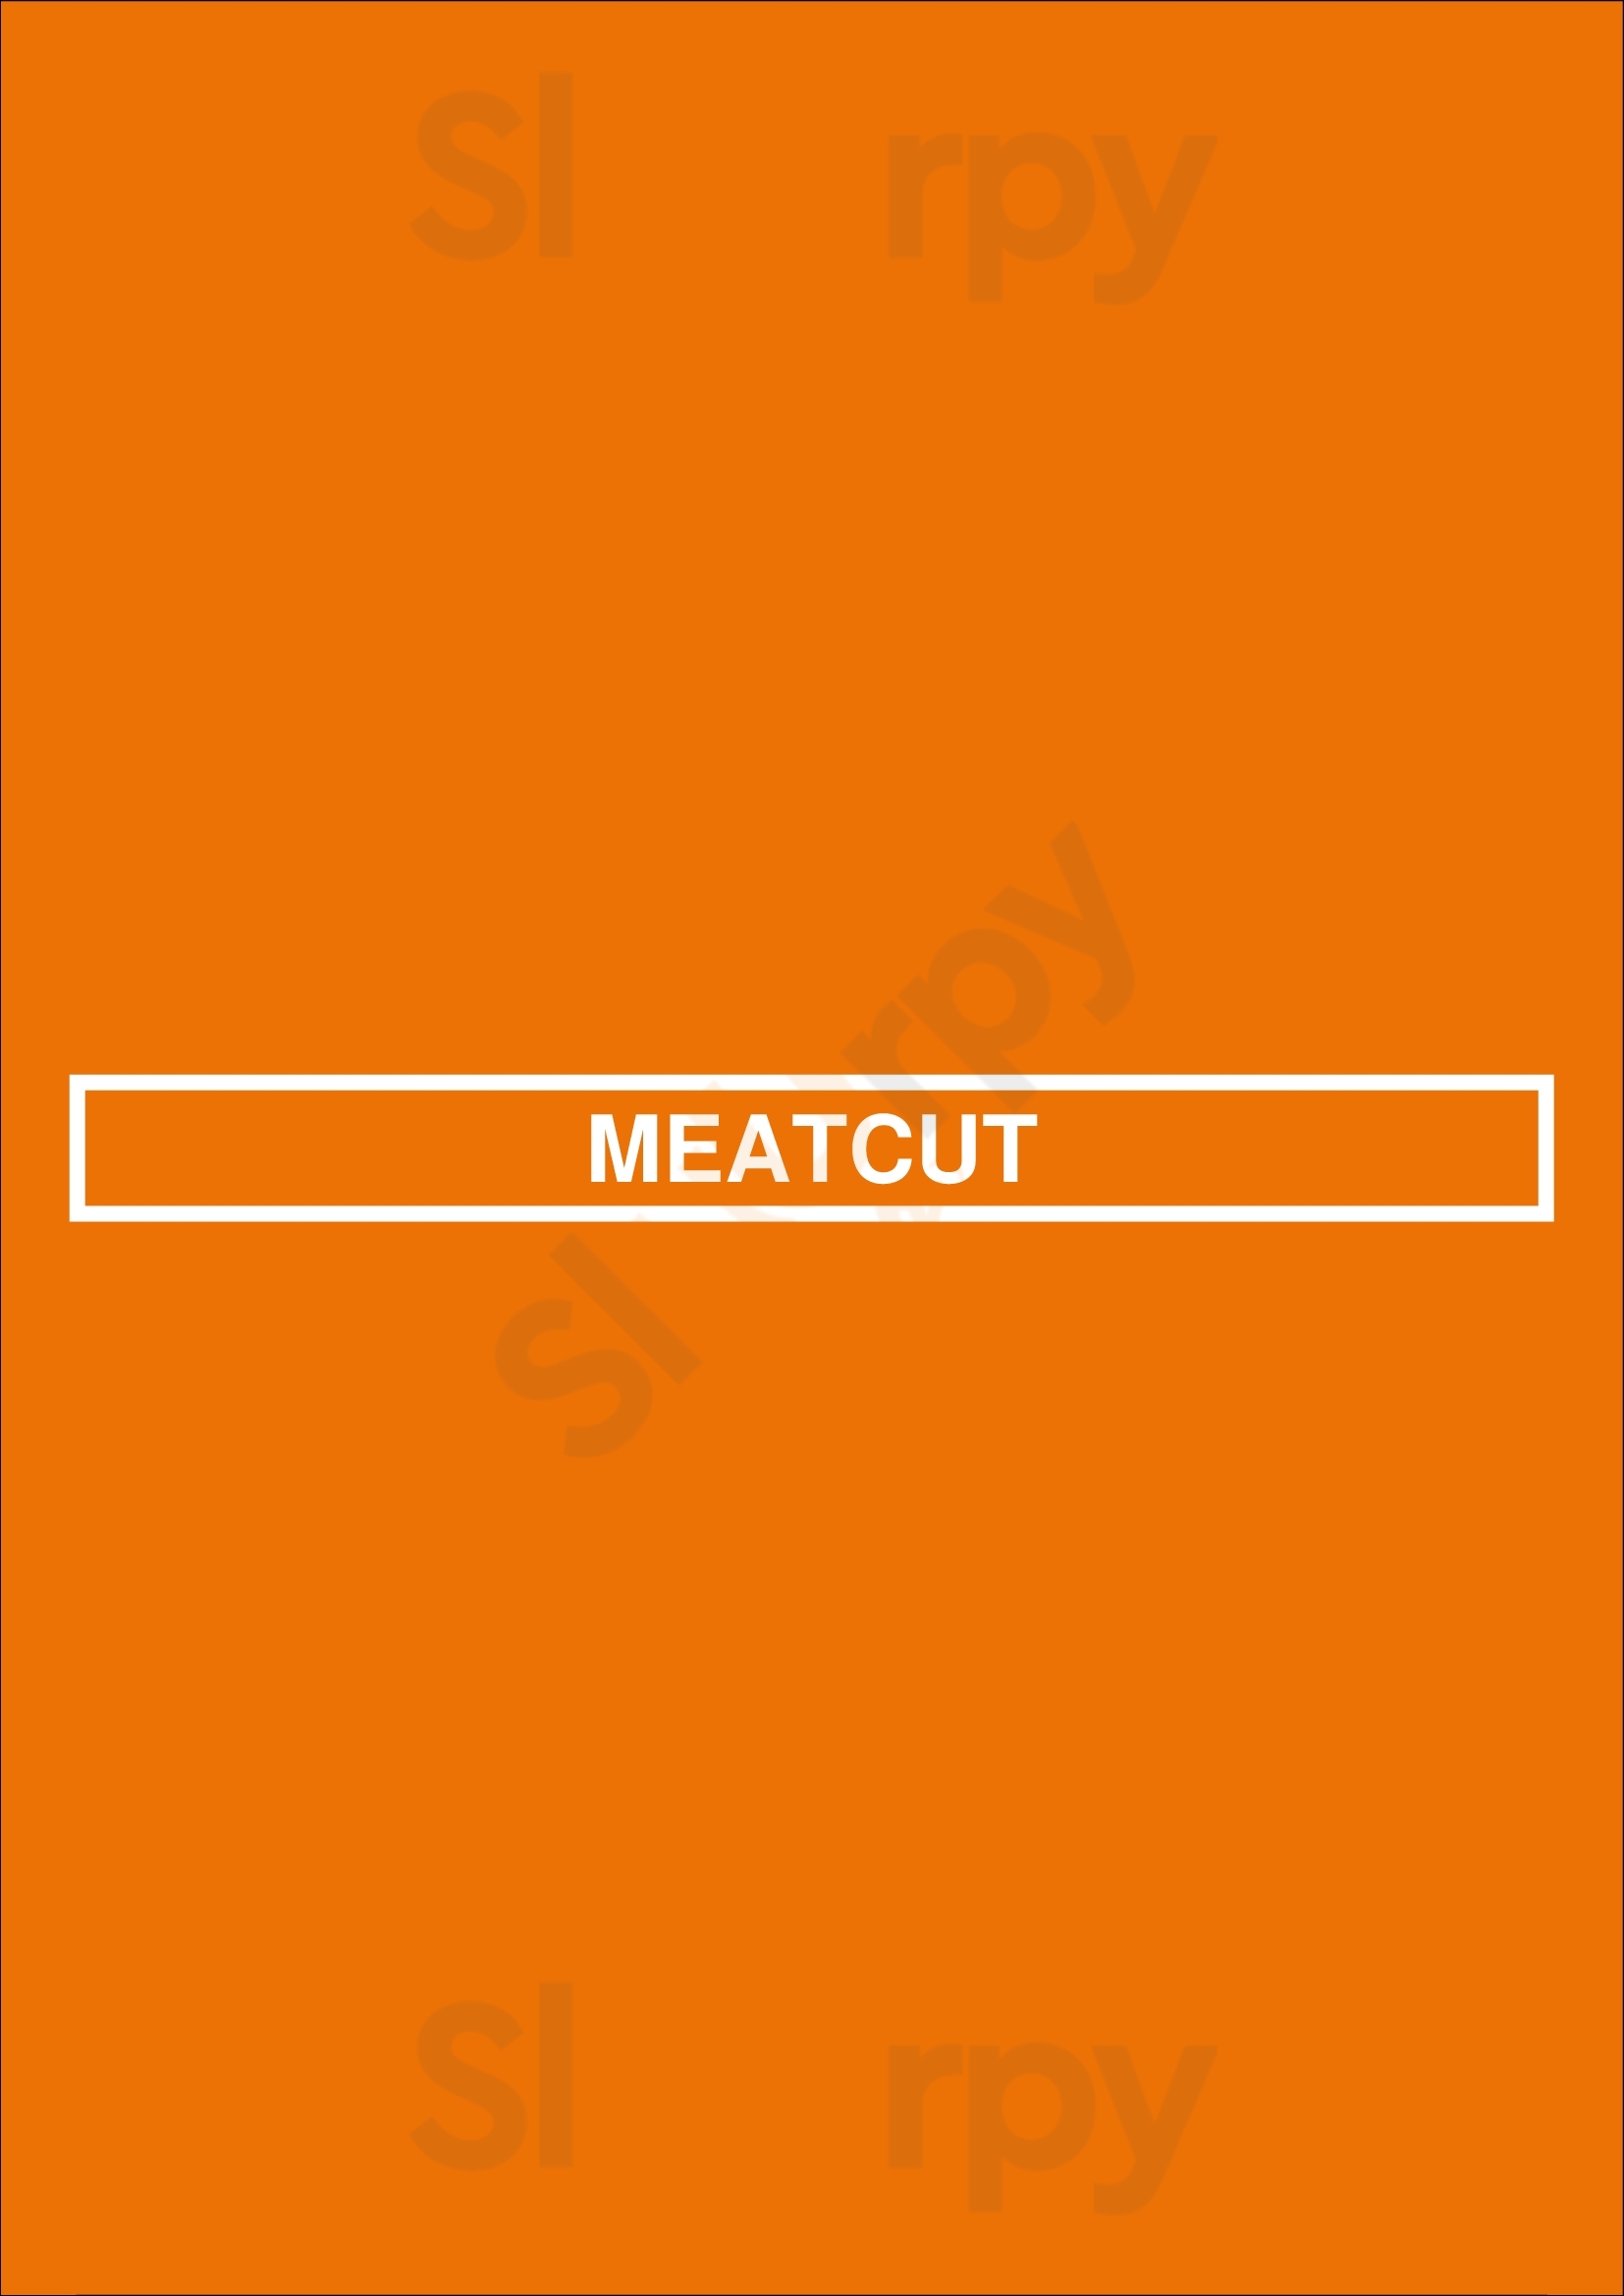 Meatcut Offenbach Menu - 1